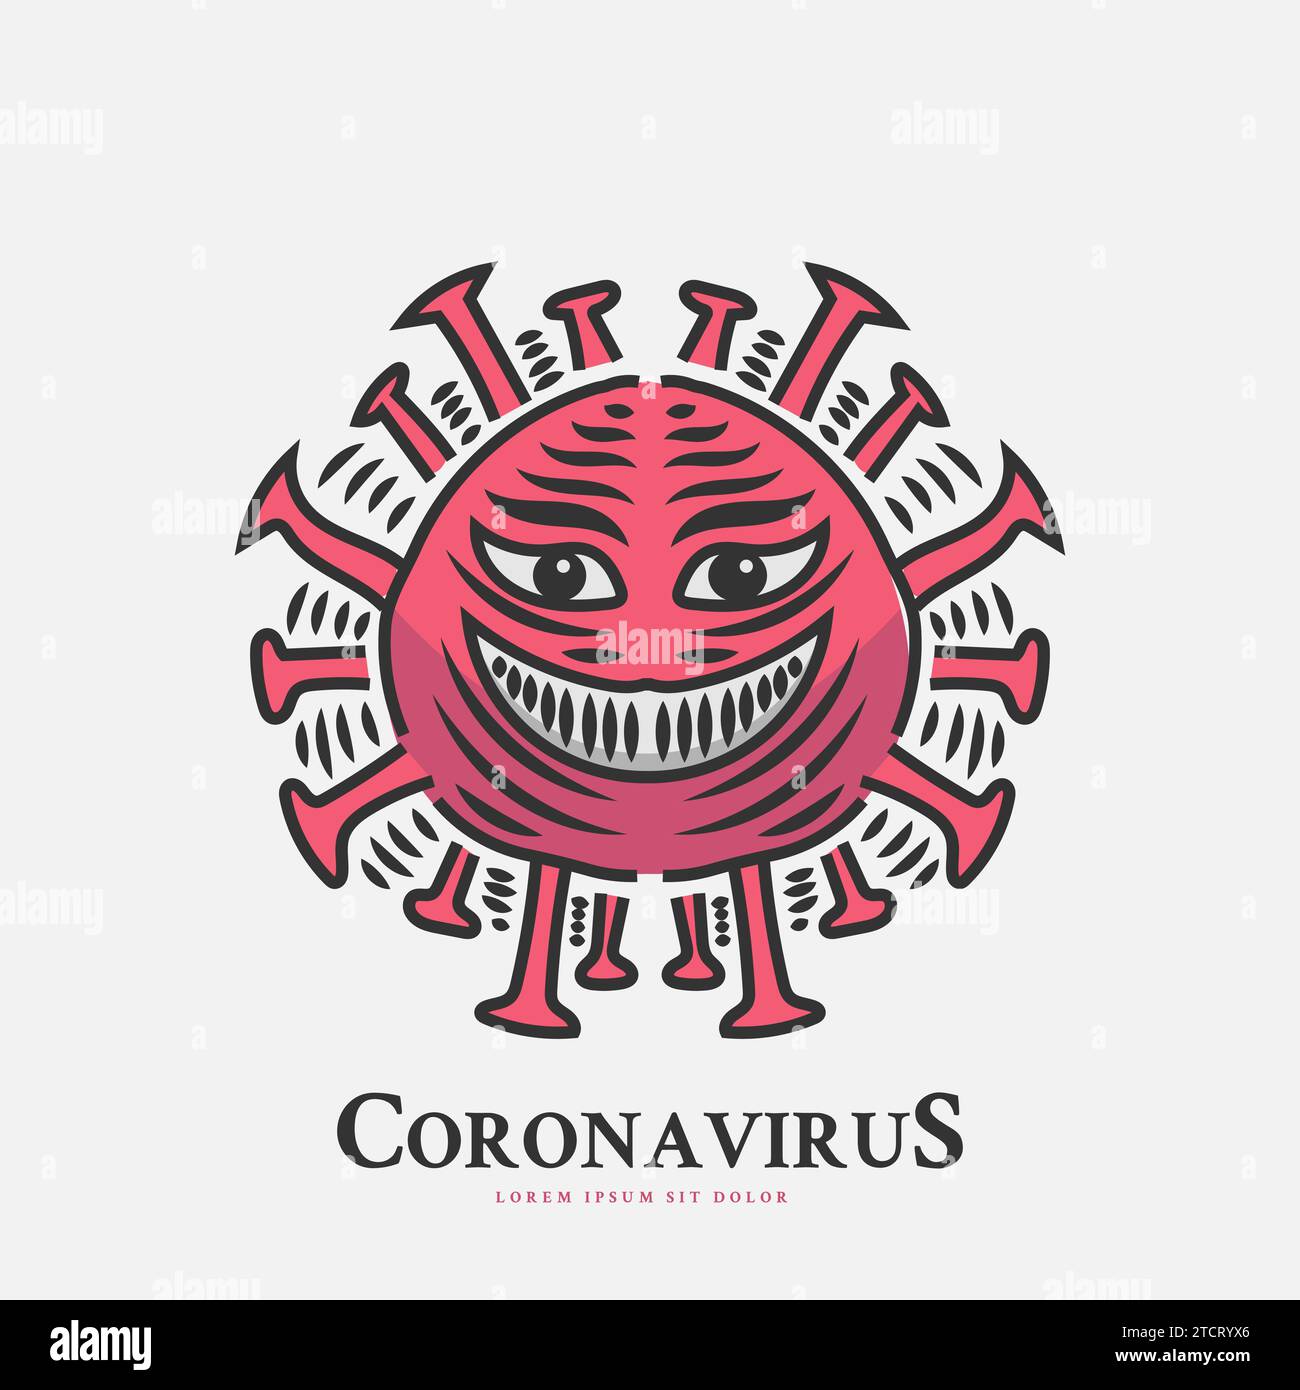 Illustrazione del coronavirus con un sorriso malvagio e inquietante in stile vintage Illustrazione Vettoriale